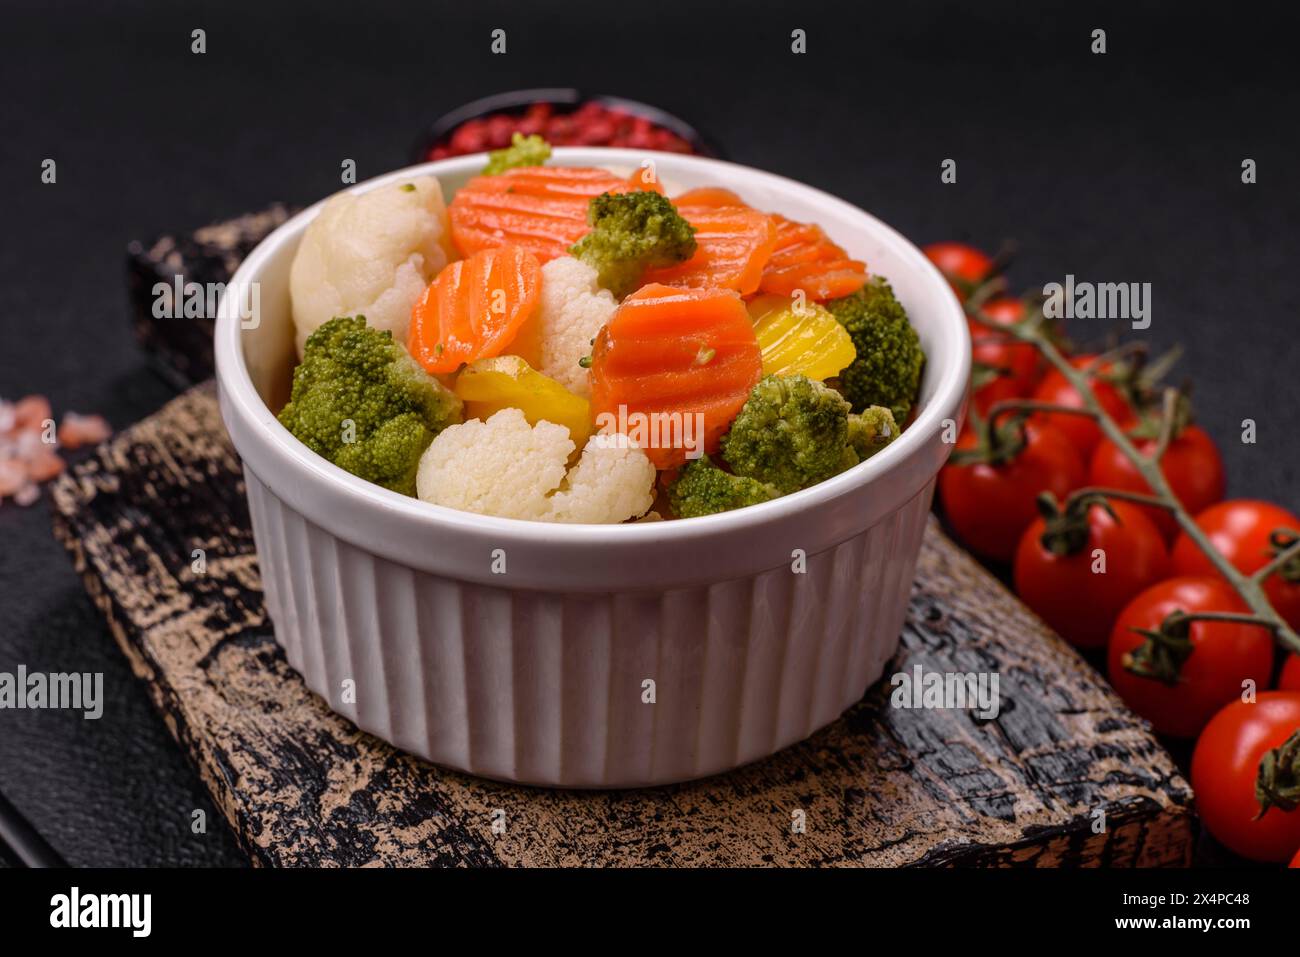 Délicieux légumes frais brocoli, chou-fleur, carottes cuits à la vapeur avec du sel, des épices et des herbes sur un fond Uni Banque D'Images